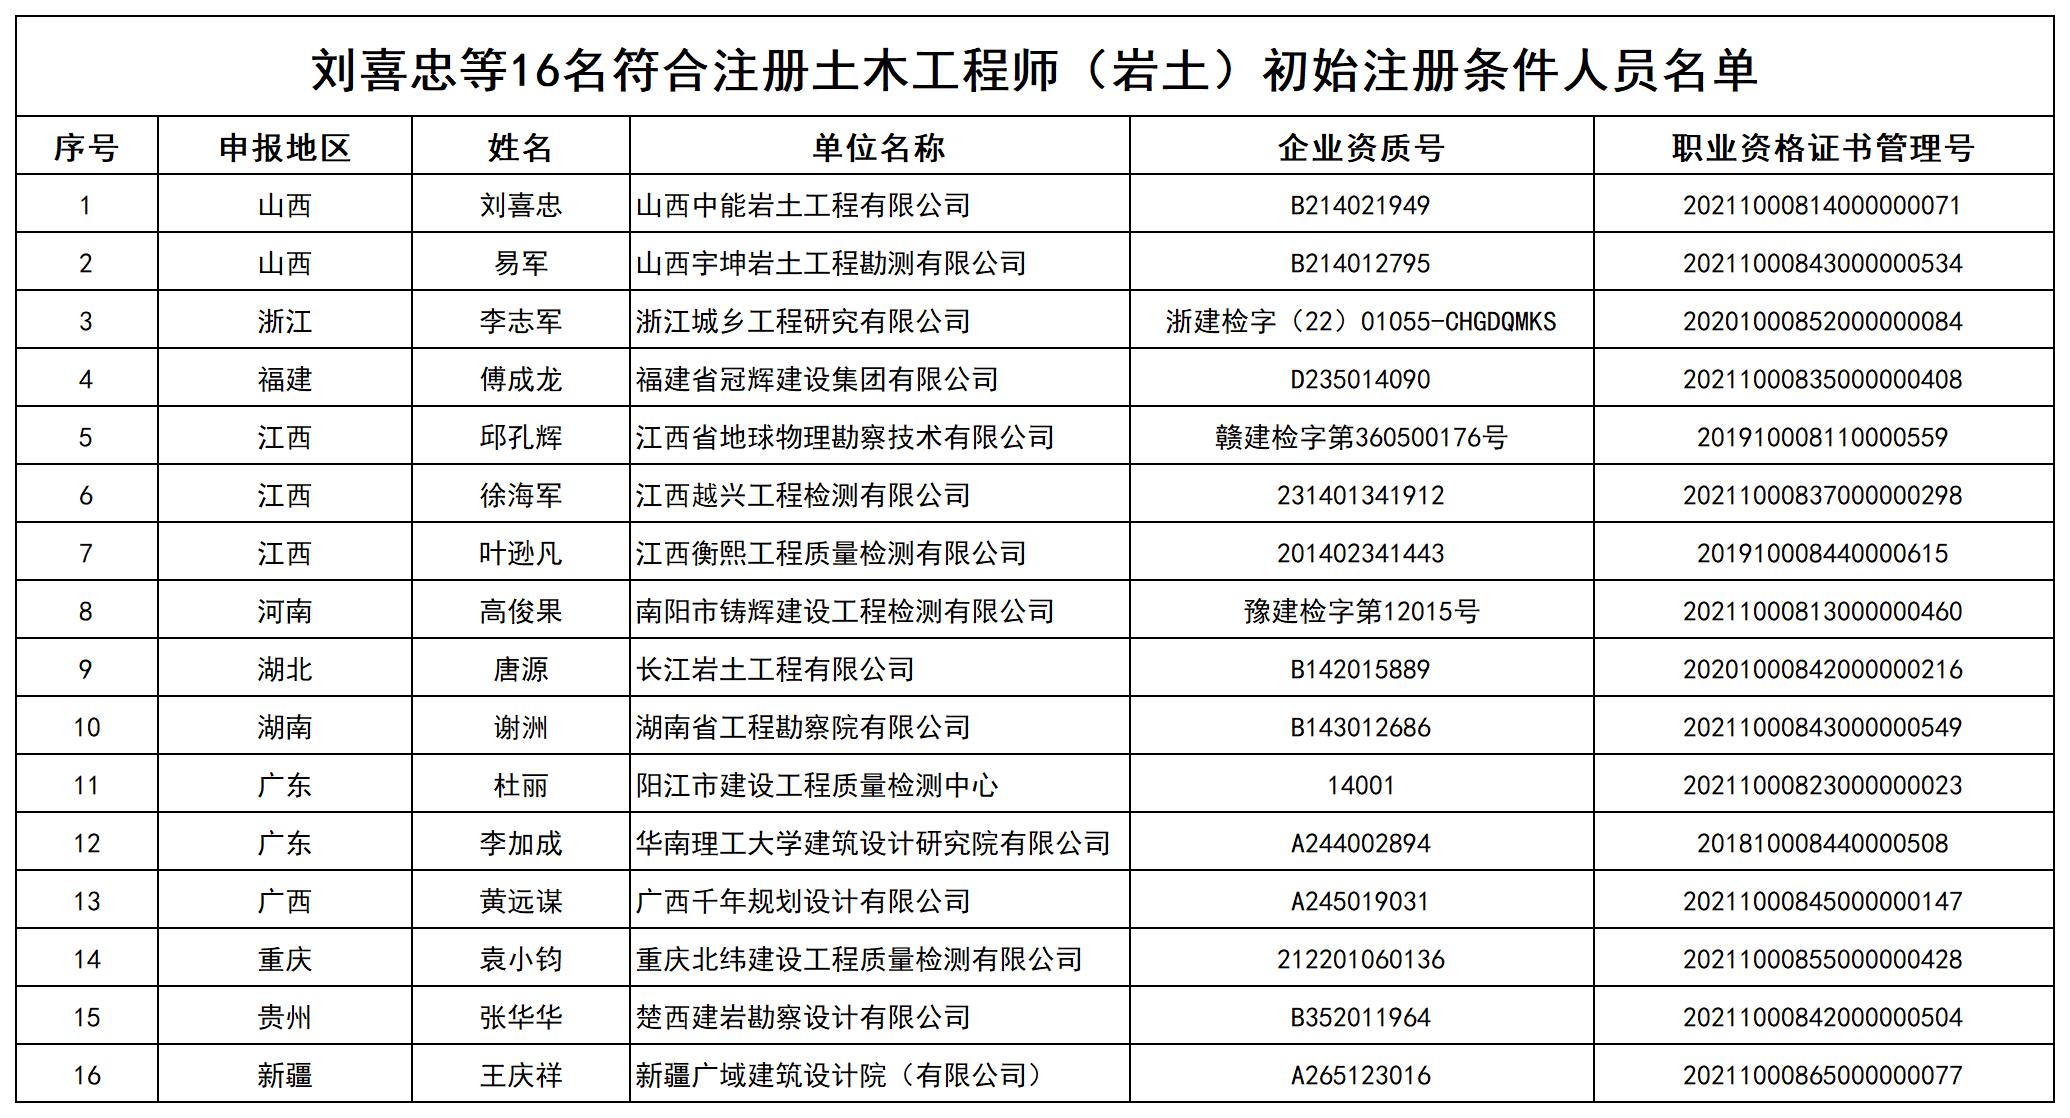 附件2 刘喜忠等16名符合注册土木工程师（岩土）初始注册条件人员名单_打印结果(1).jpg